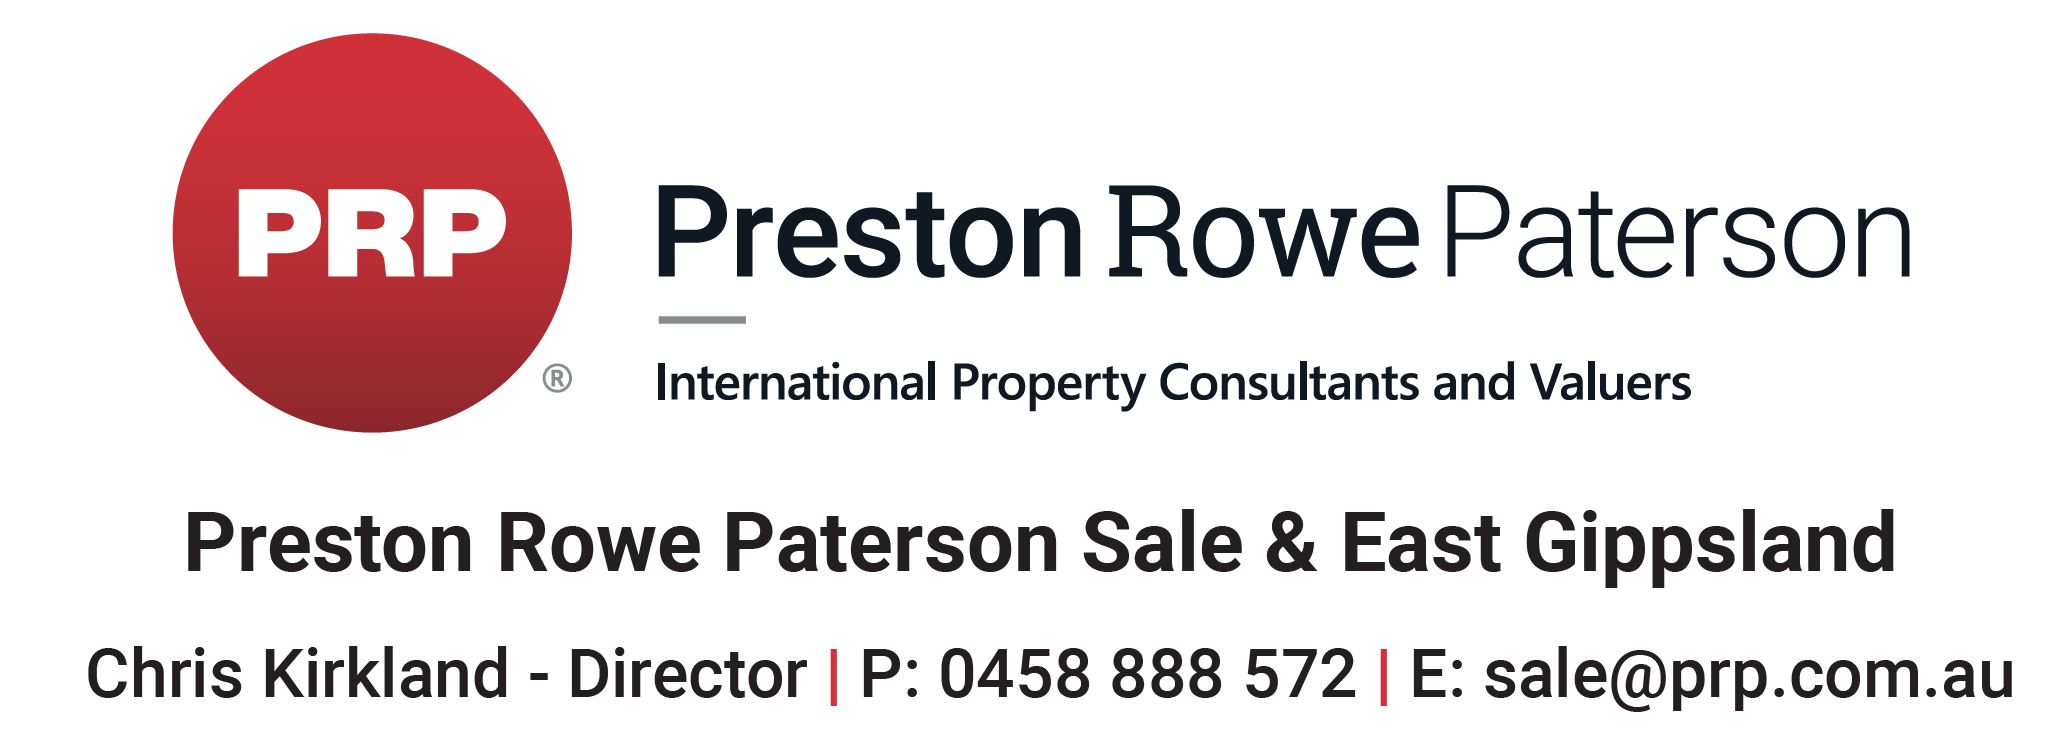 Preston Rowe Paterson Signage